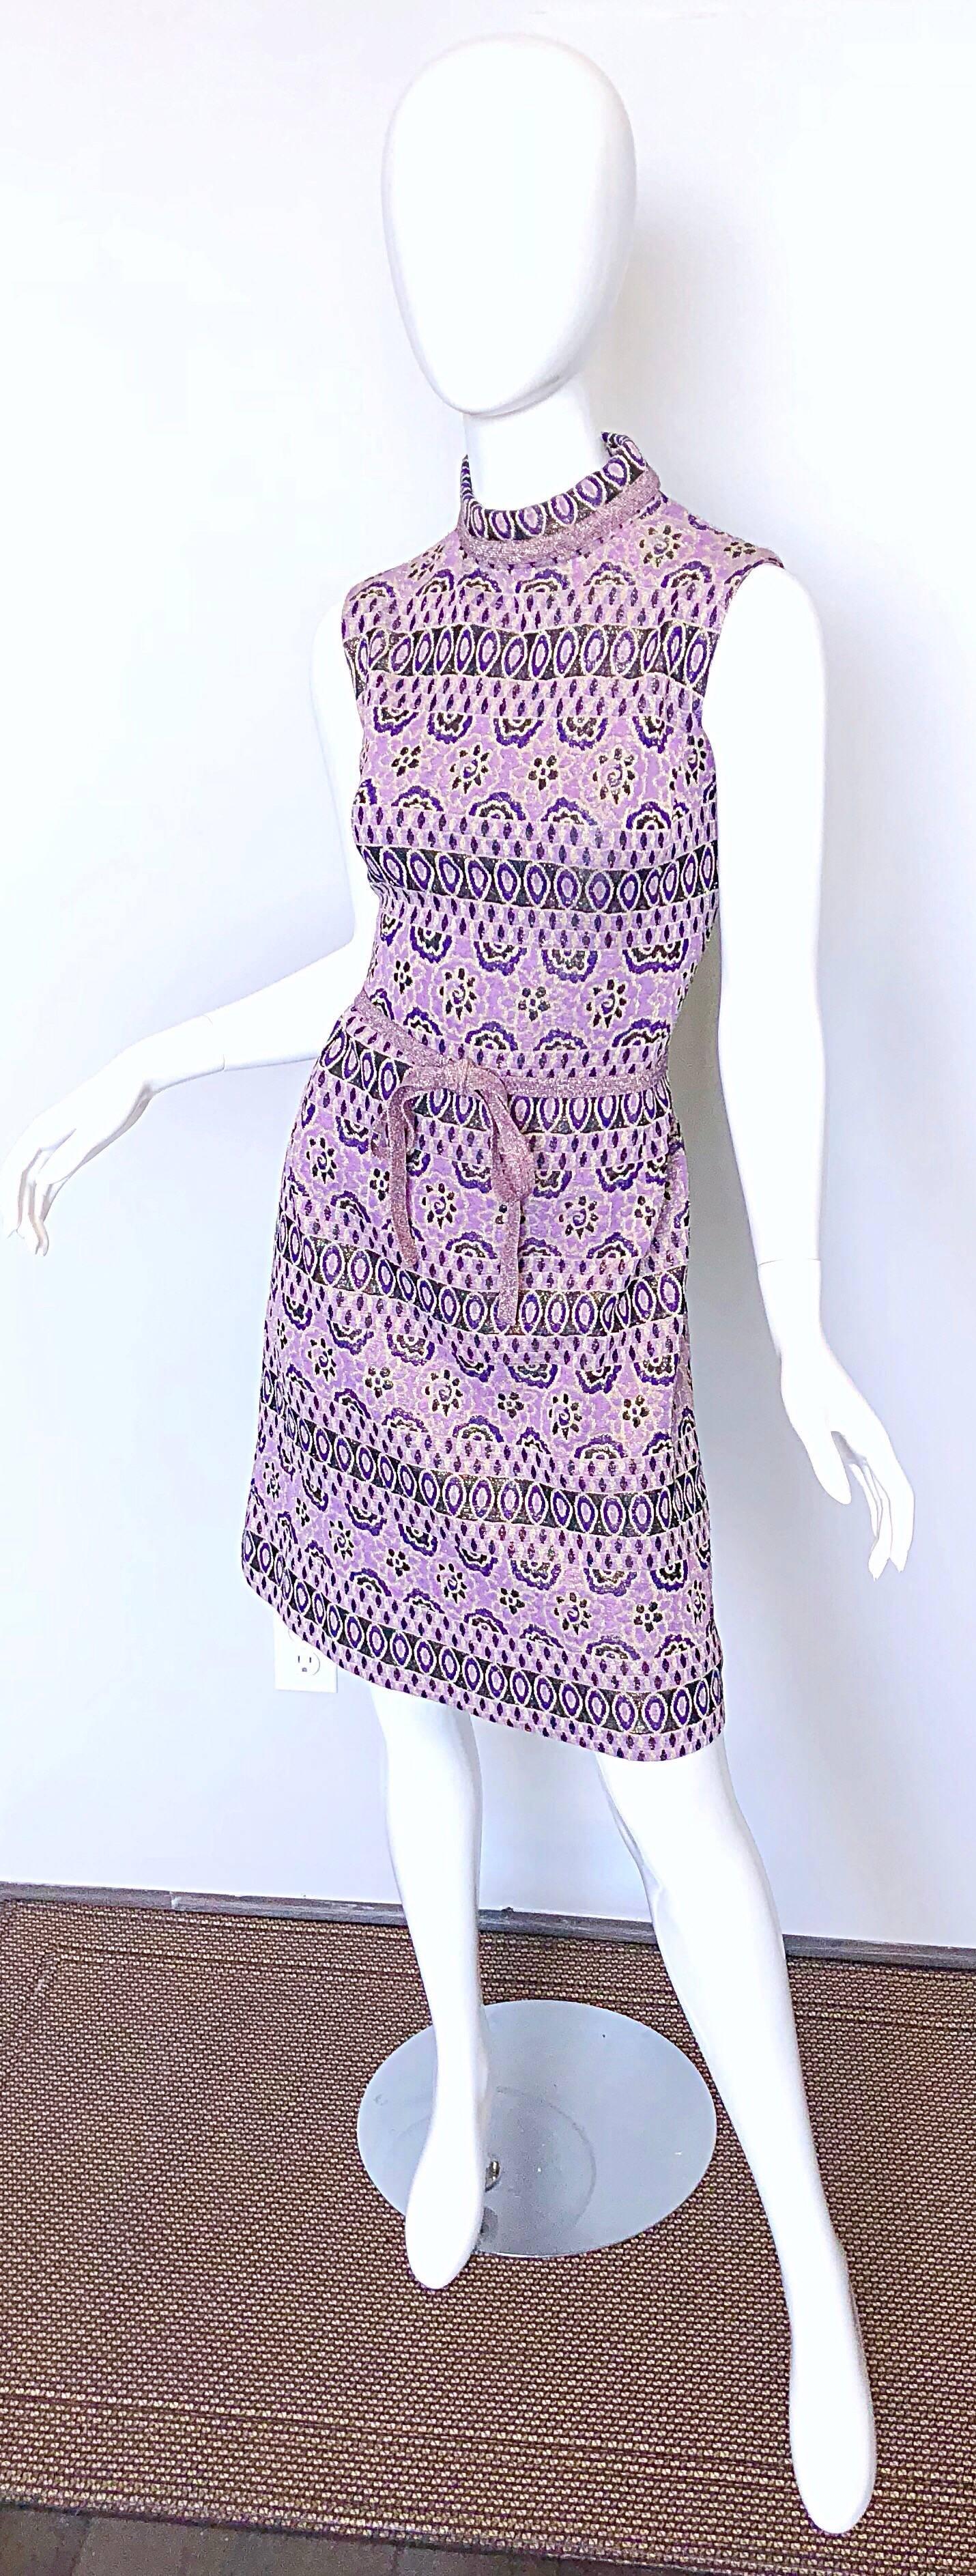 purple 60s dress